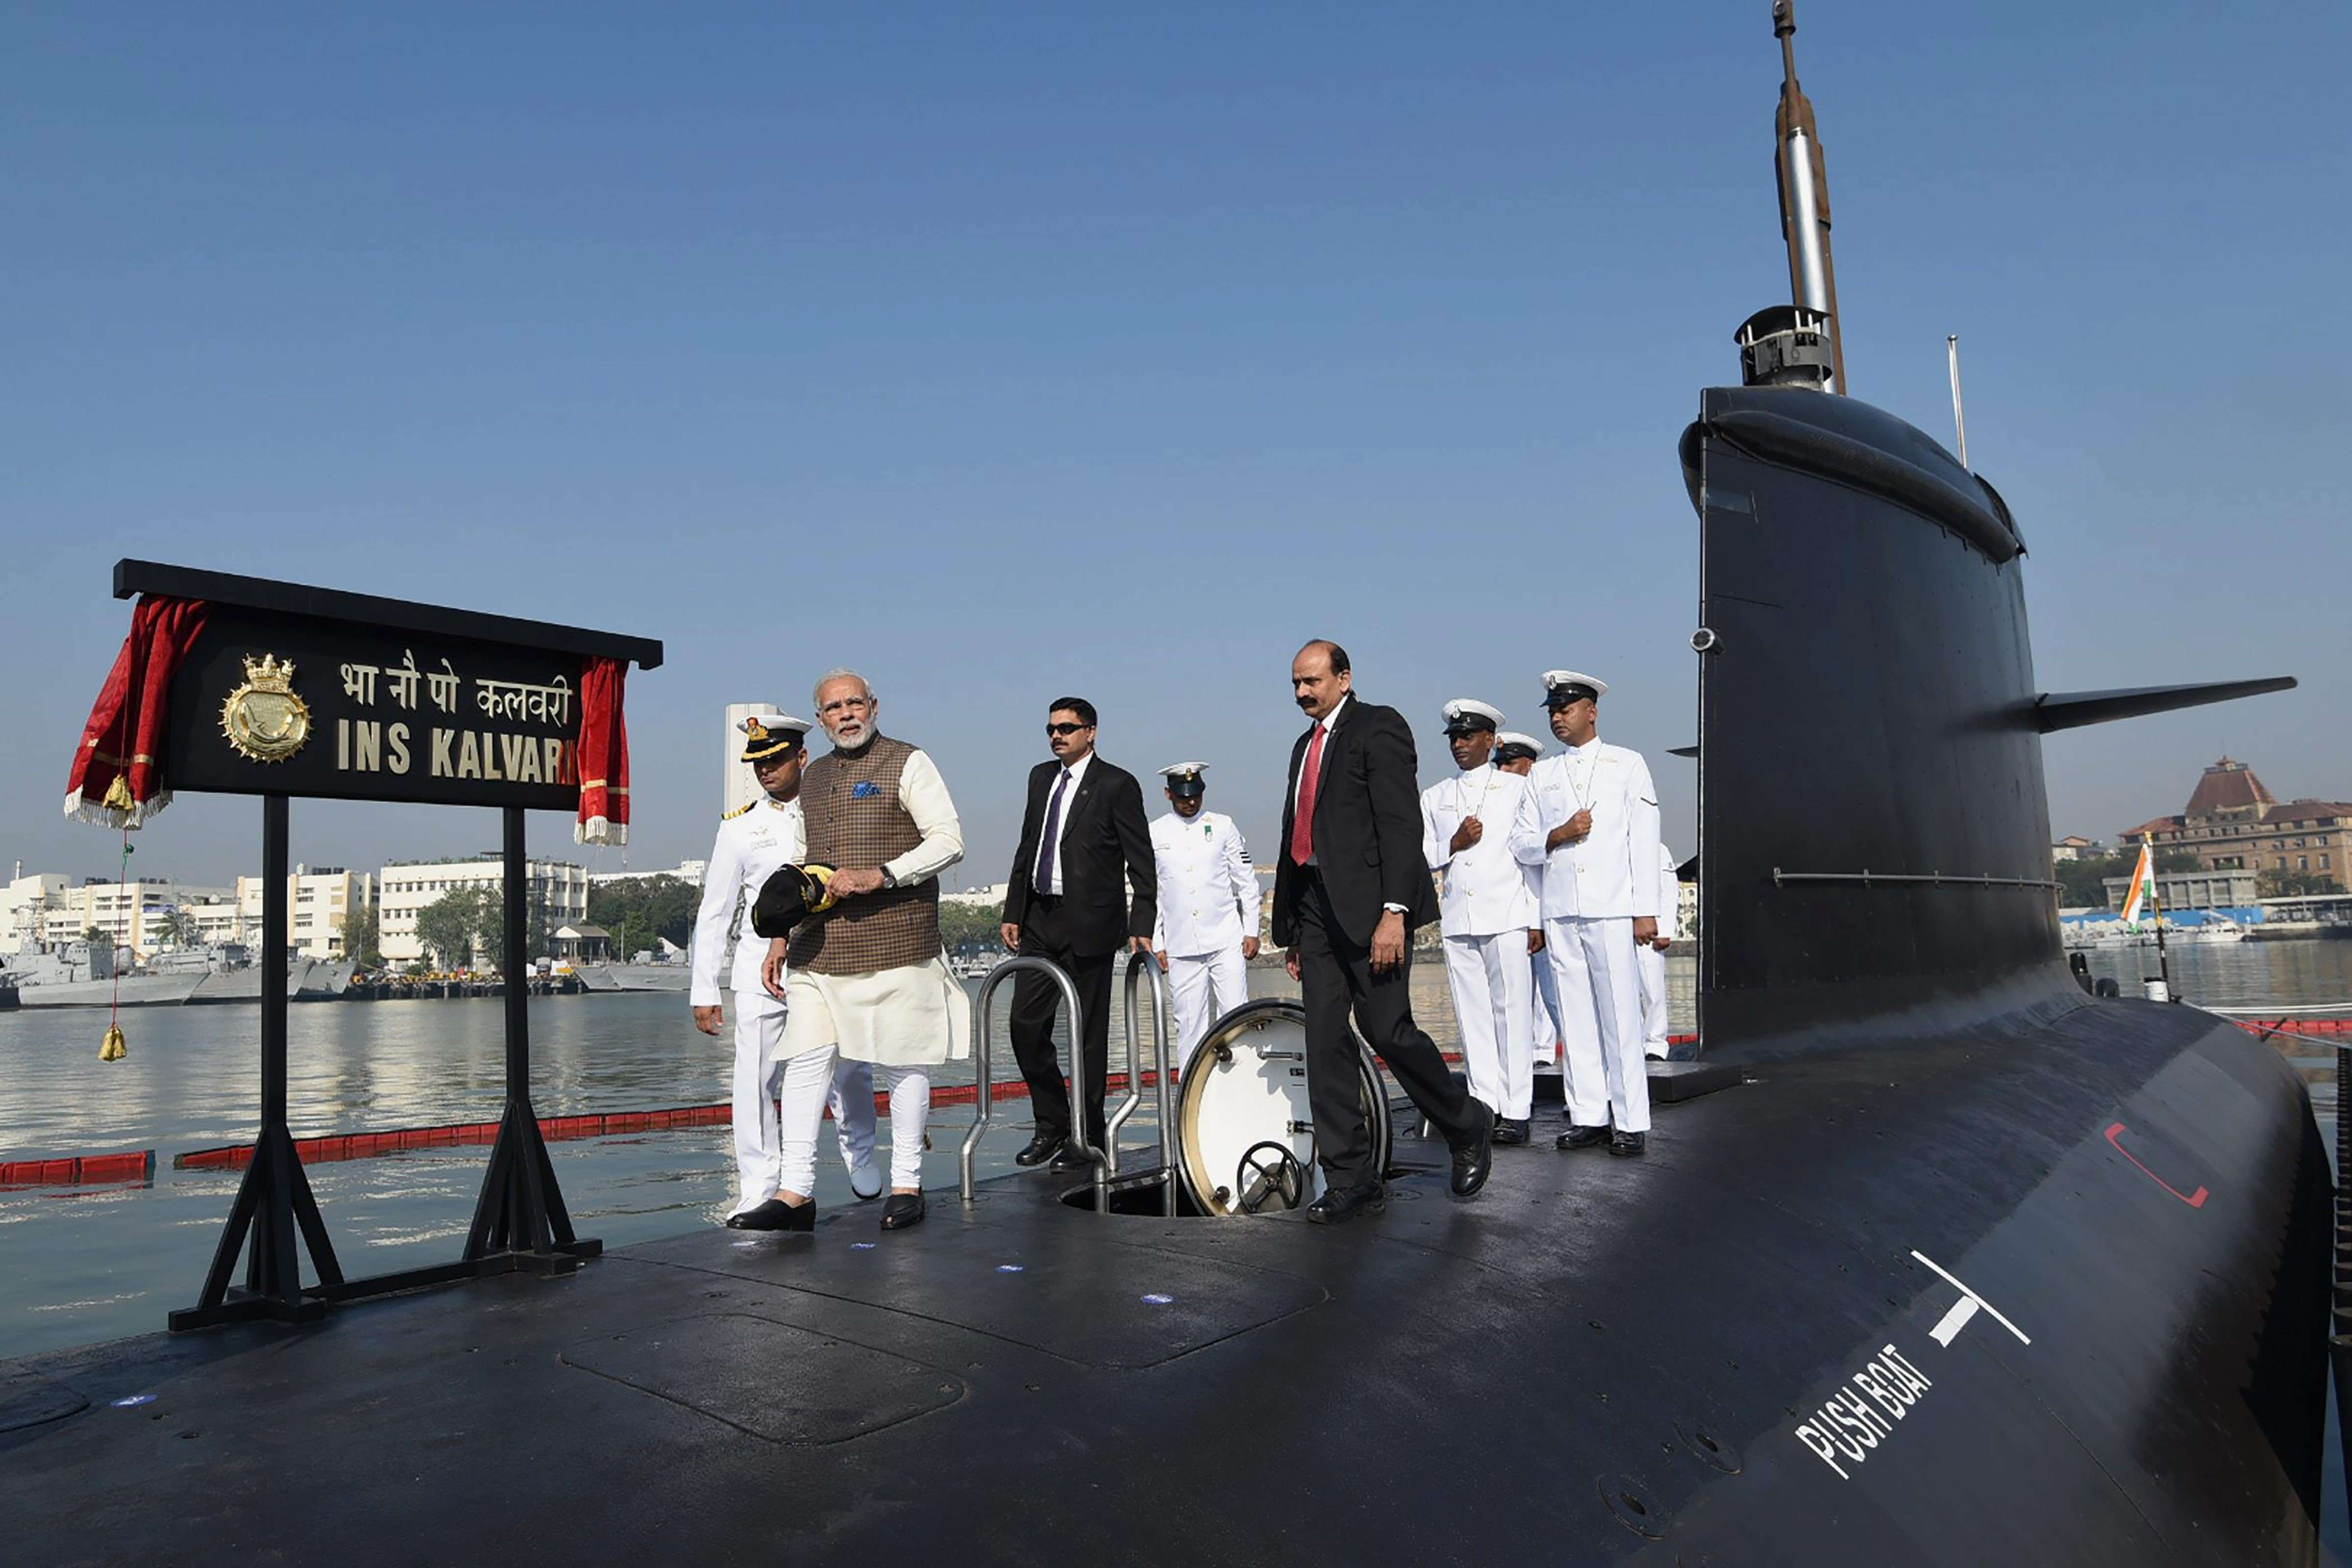 आईएनएस कलवरी बढ़ाएगी भारत की रक्षा व सुरक्षा  : प्रधानमंत्री मोदी